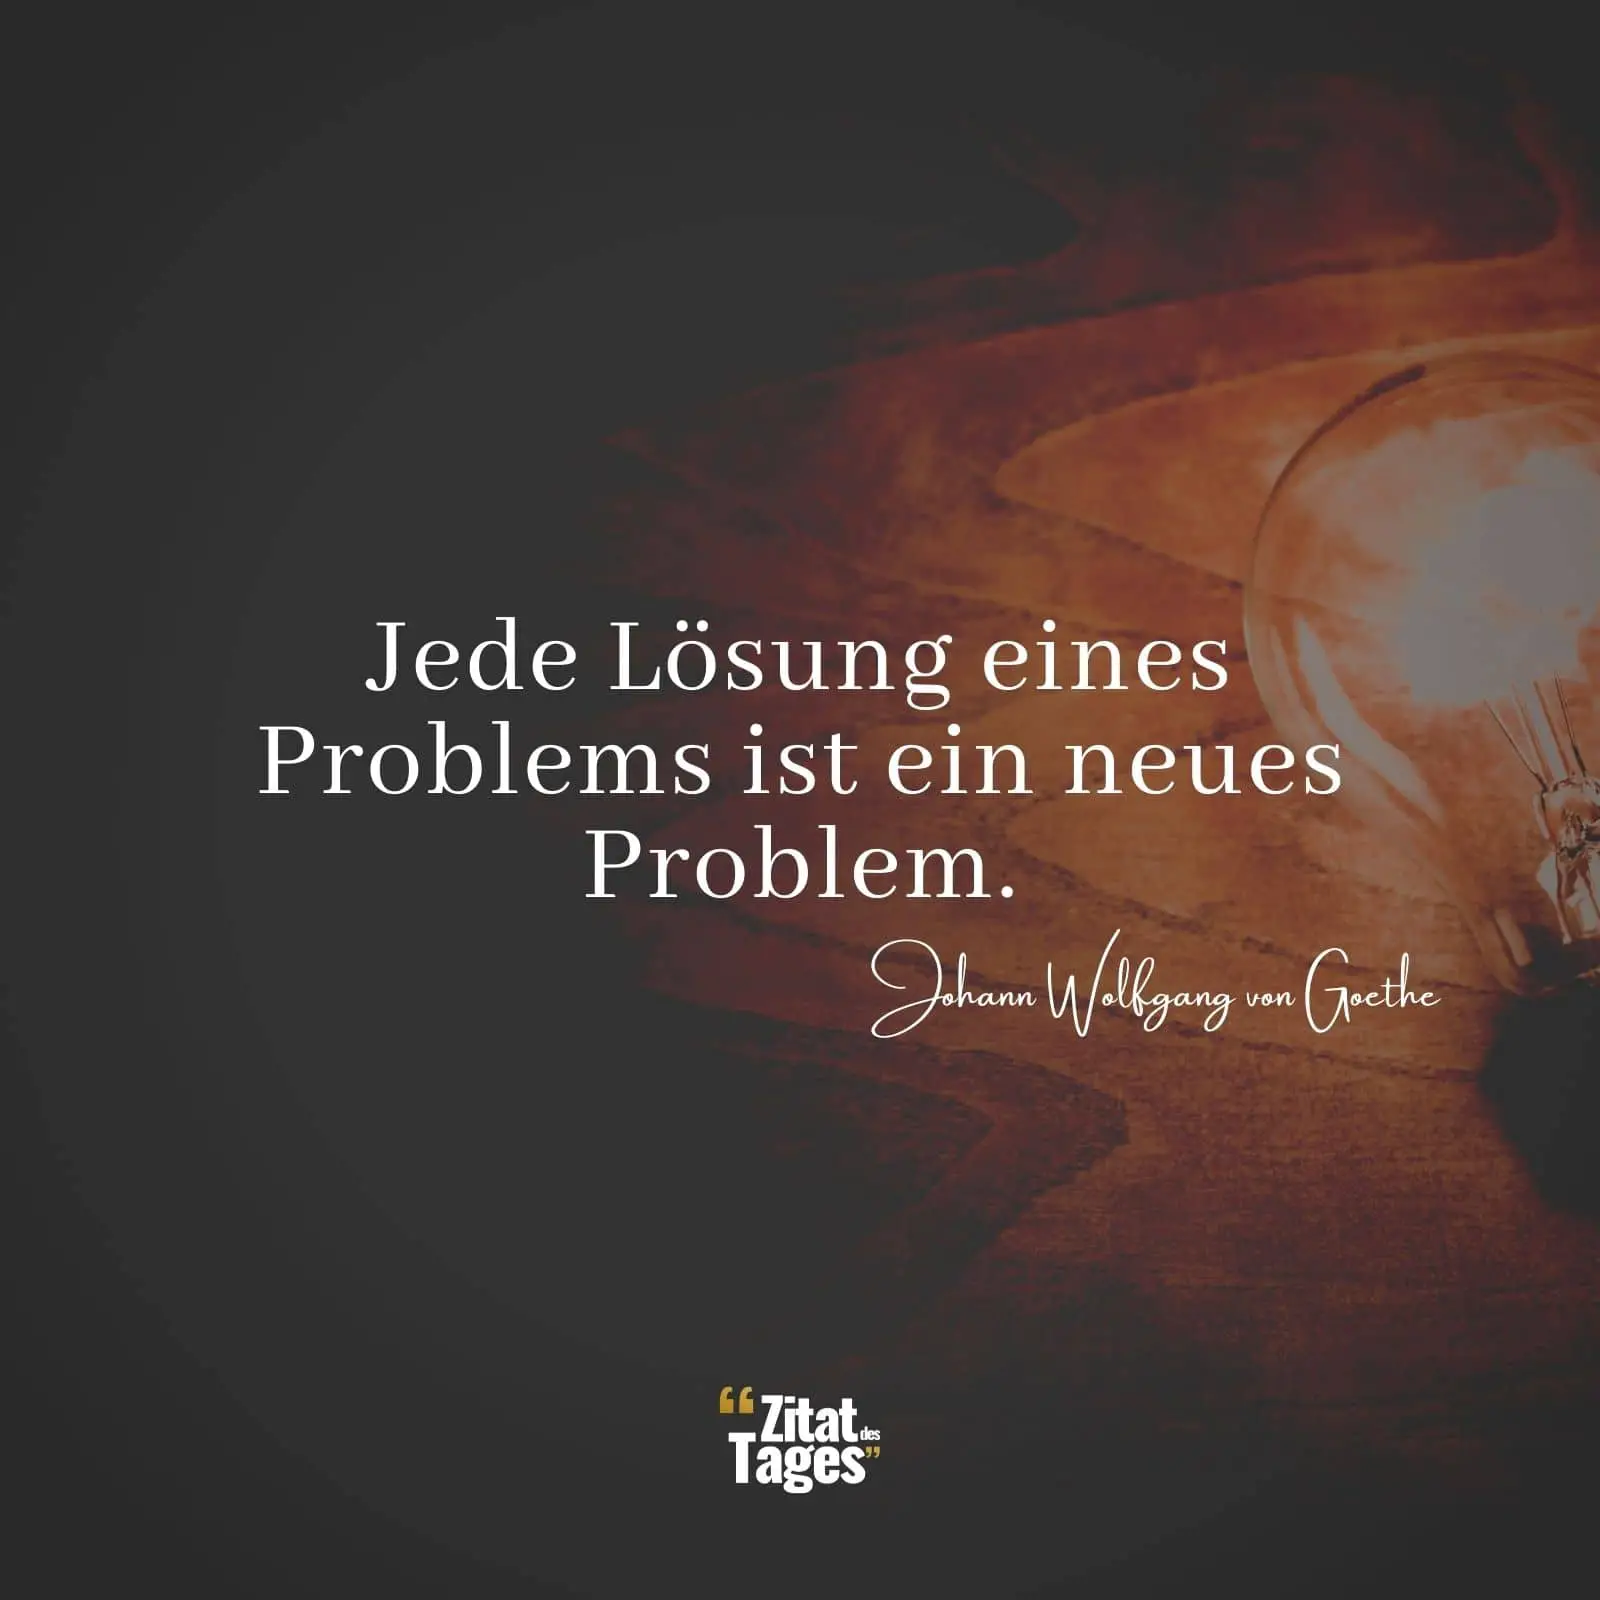 Jede Lösung eines Problems ist ein neues Problem. - Johann Wolfgang von Goethe